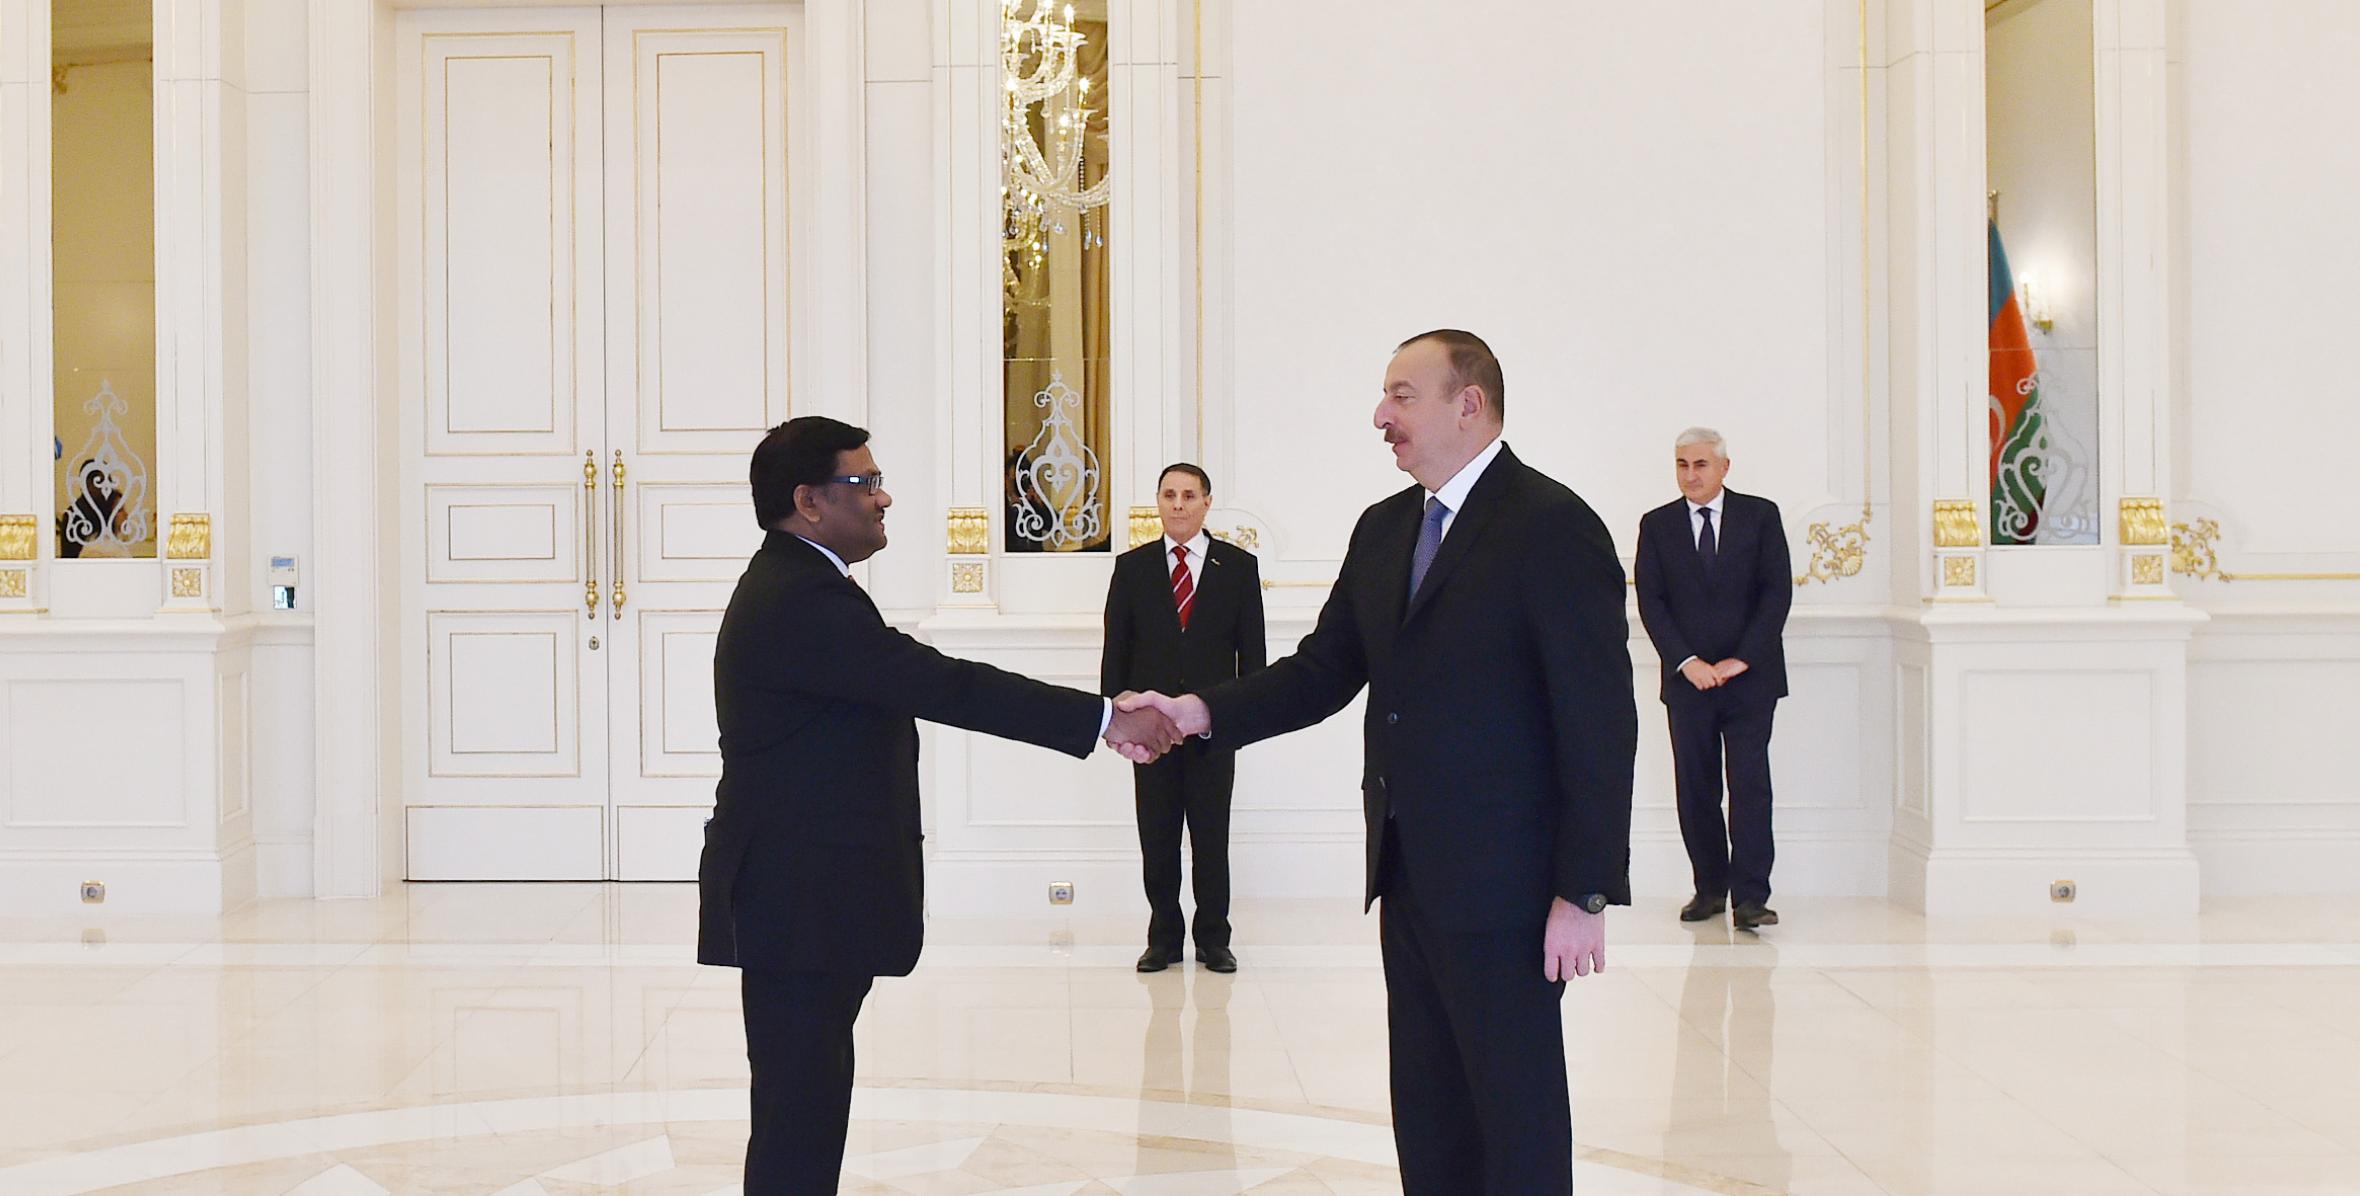 Ильхам Алиев принял верительные грамоты новоназначенного посла Бангладеш в Азербайджане